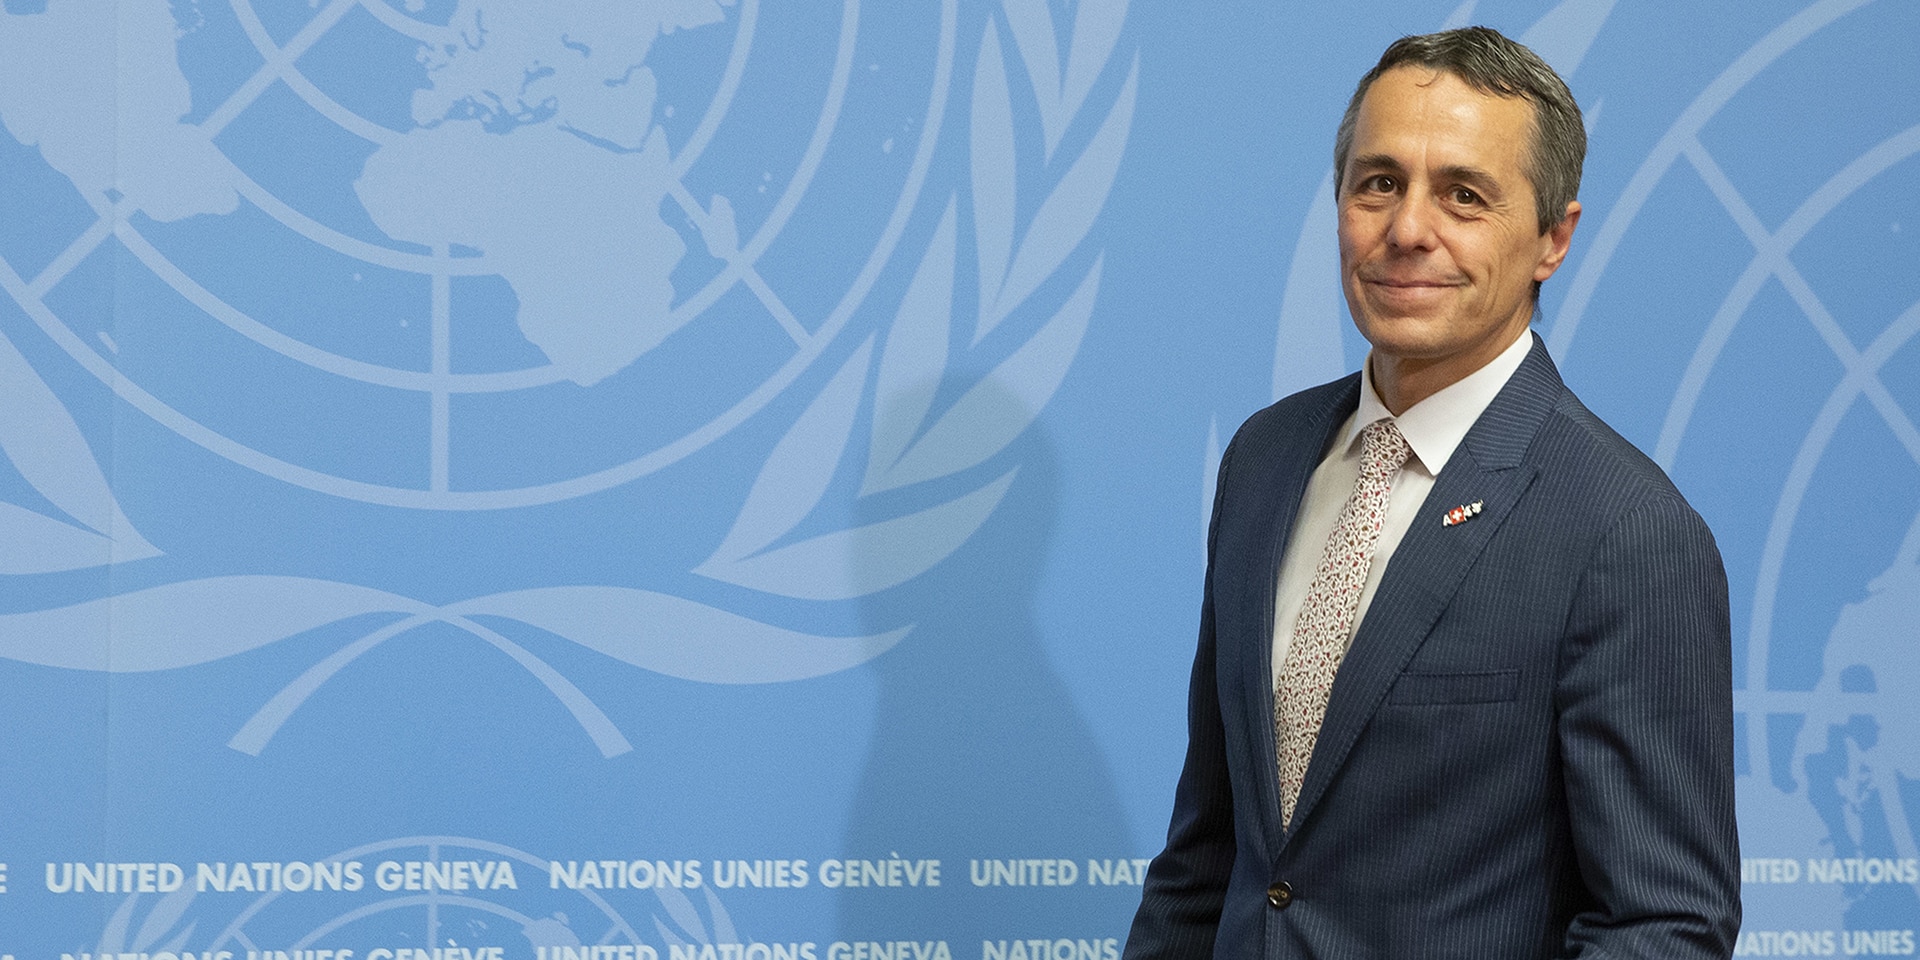 Le conseiller fédéral Ignazio Cassis se tient devant un podium, derrière lui un mur avec le logo de l'ONU.